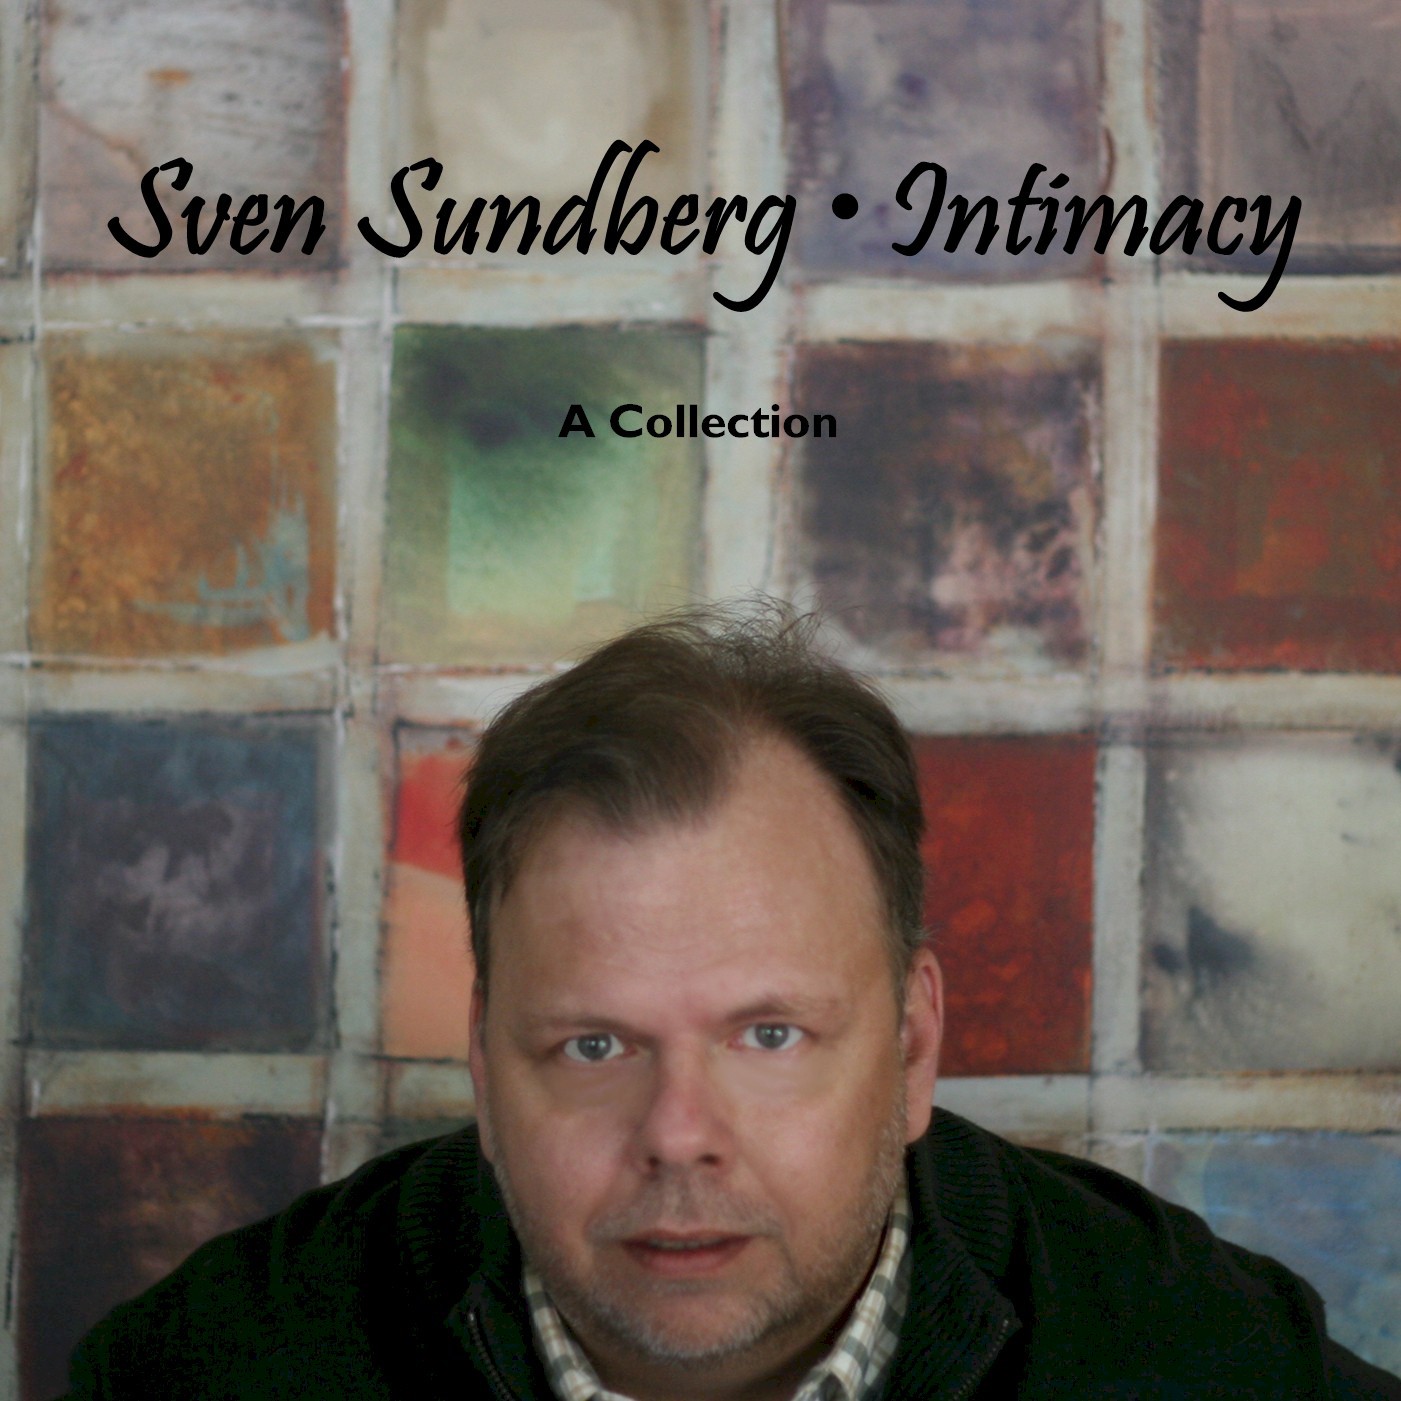 Sven Sundberg Intimacy CD review in NeuFutur